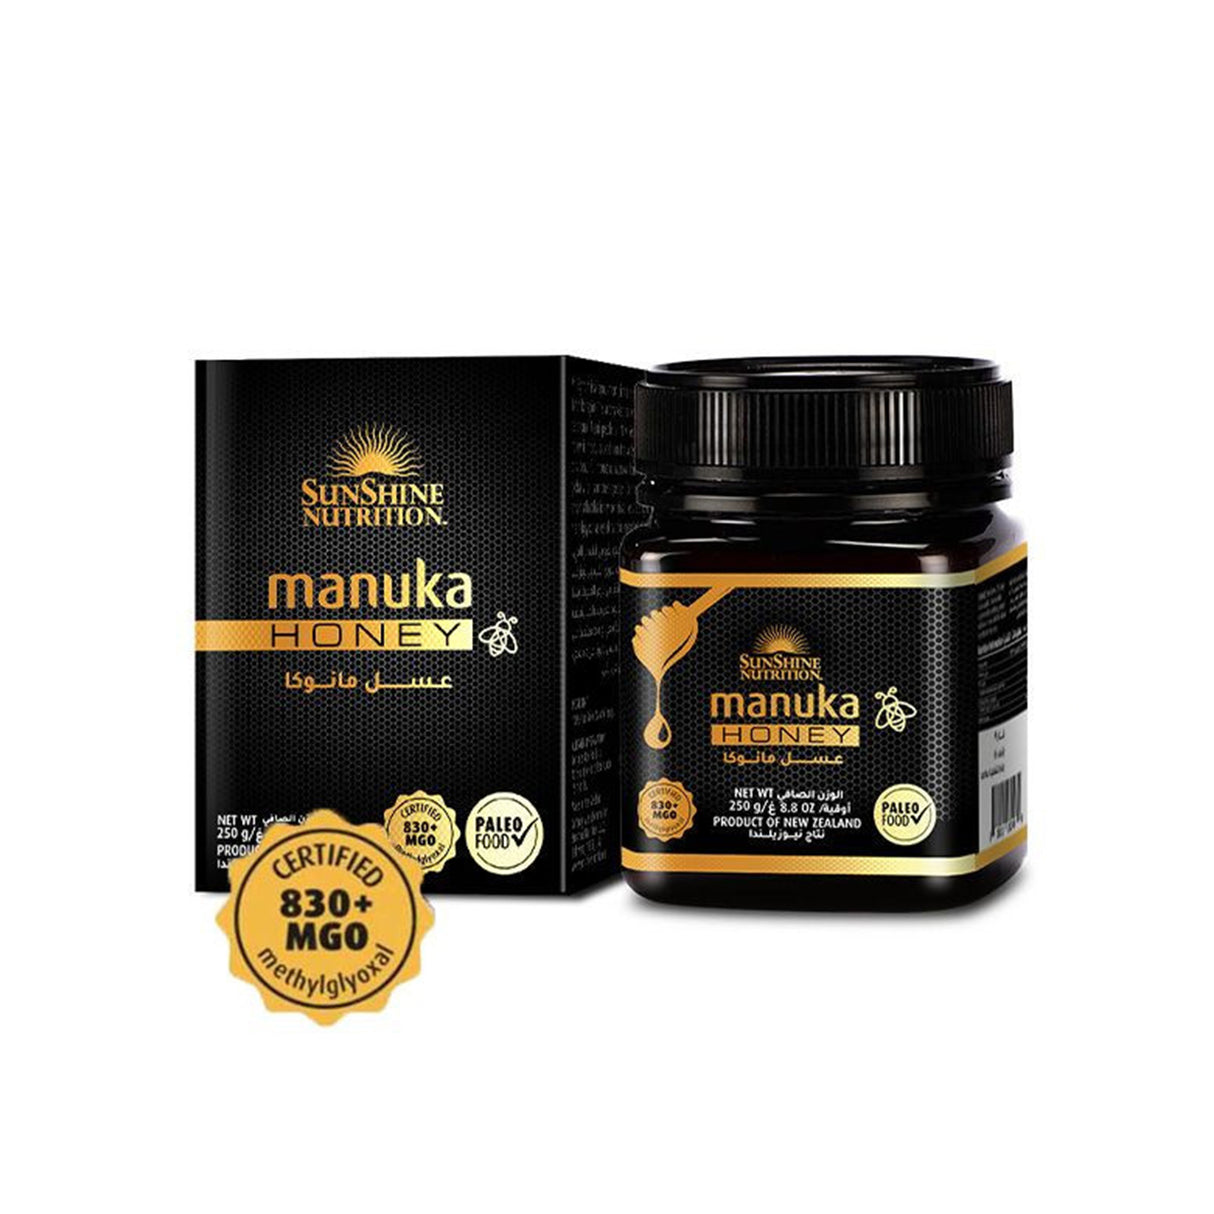 Sunshine Nutrition Manuka Honey 830+MGO 250g